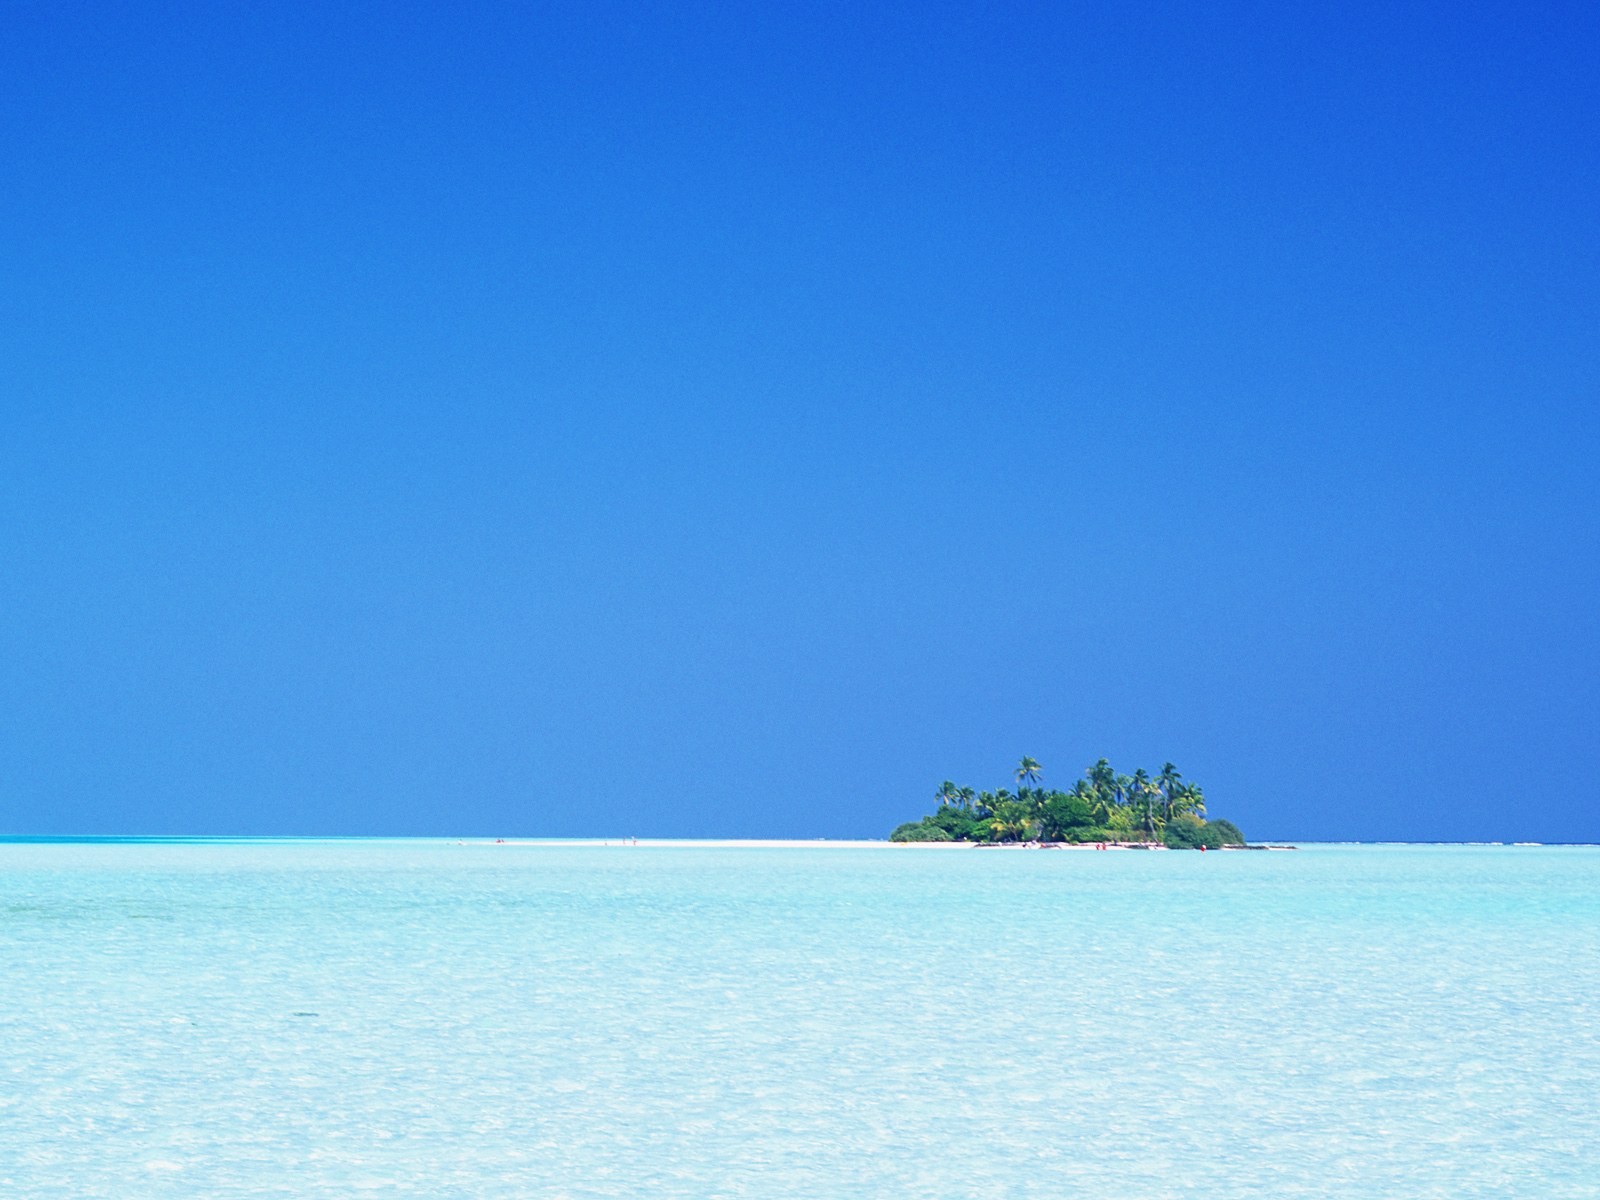 Maledivy vody a modrou oblohu #21 - 1600x1200